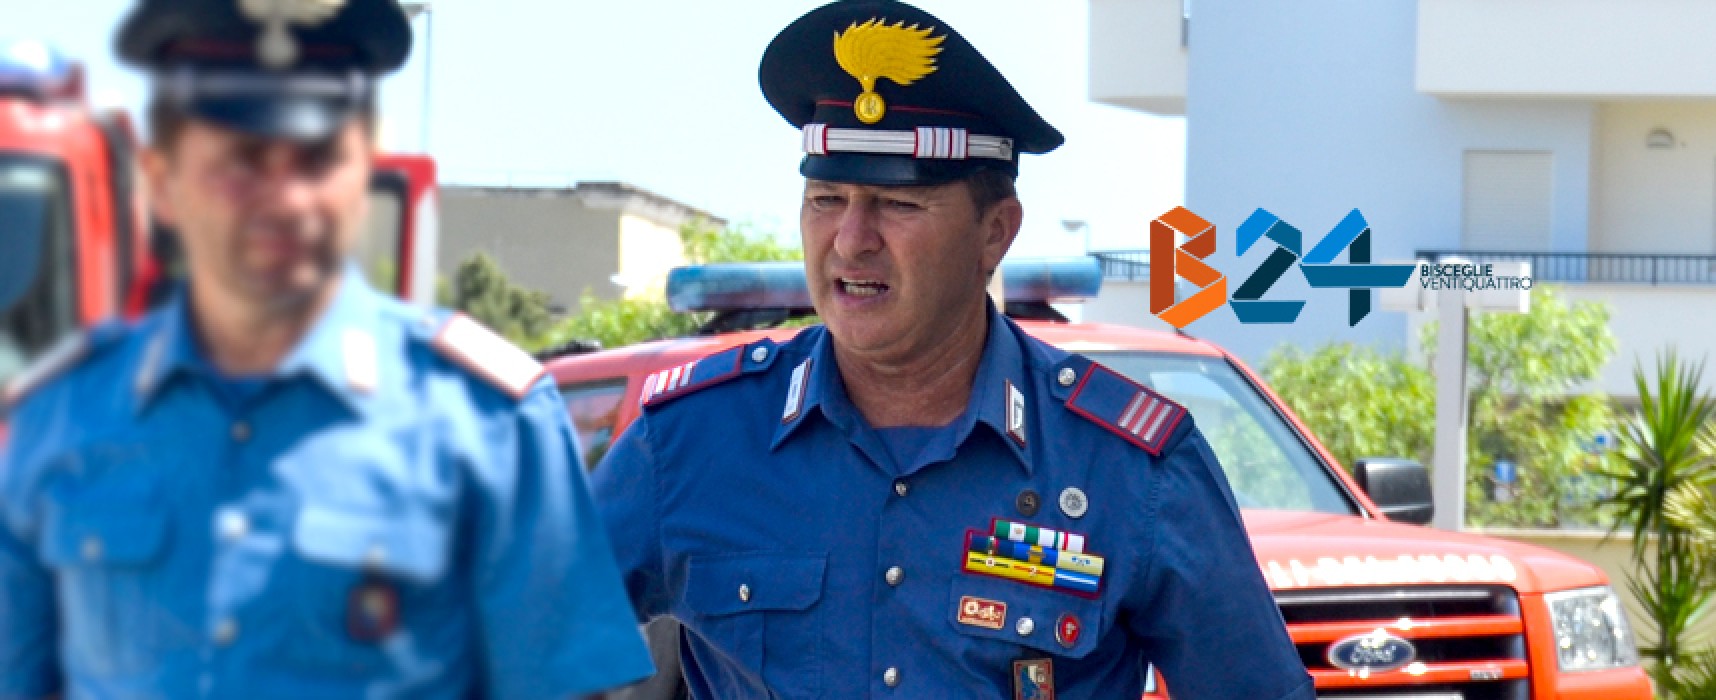 Encomio per i carabinieri Cimadomo e Marcone: sgominarono pericolosa banda di rapinatori